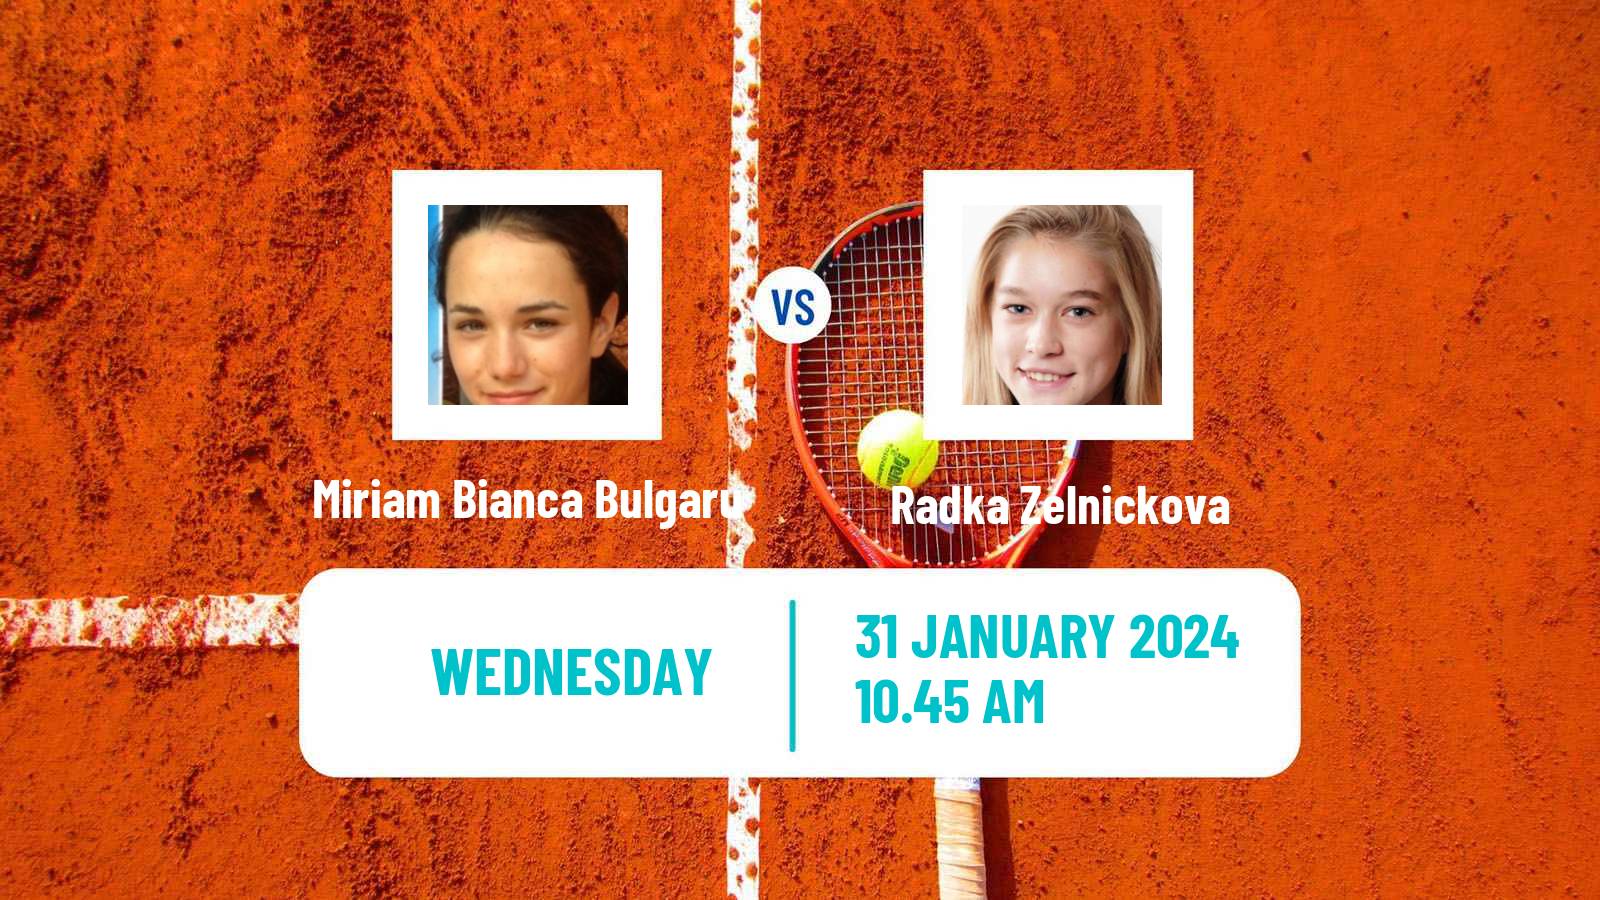 Tennis ITF W50 Porto Women Miriam Bianca Bulgaru - Radka Zelnickova